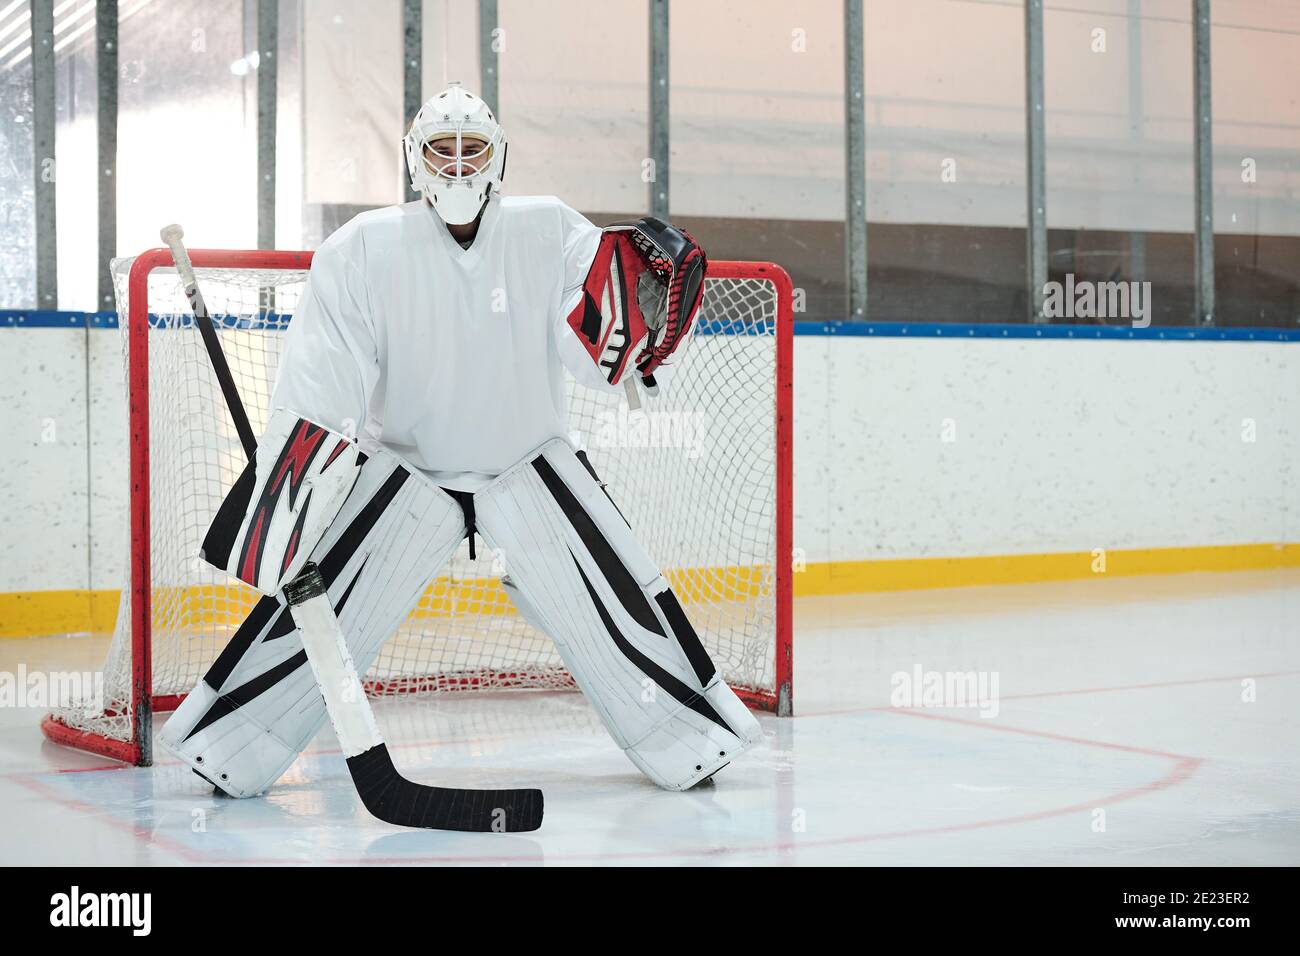 Hockeyspieler in weißer Sportuniform, Schutzhelm und Handschuhe halten Stock, während auf der Eisbahn gegen Netz stehen und warten auf Puck Stockfoto